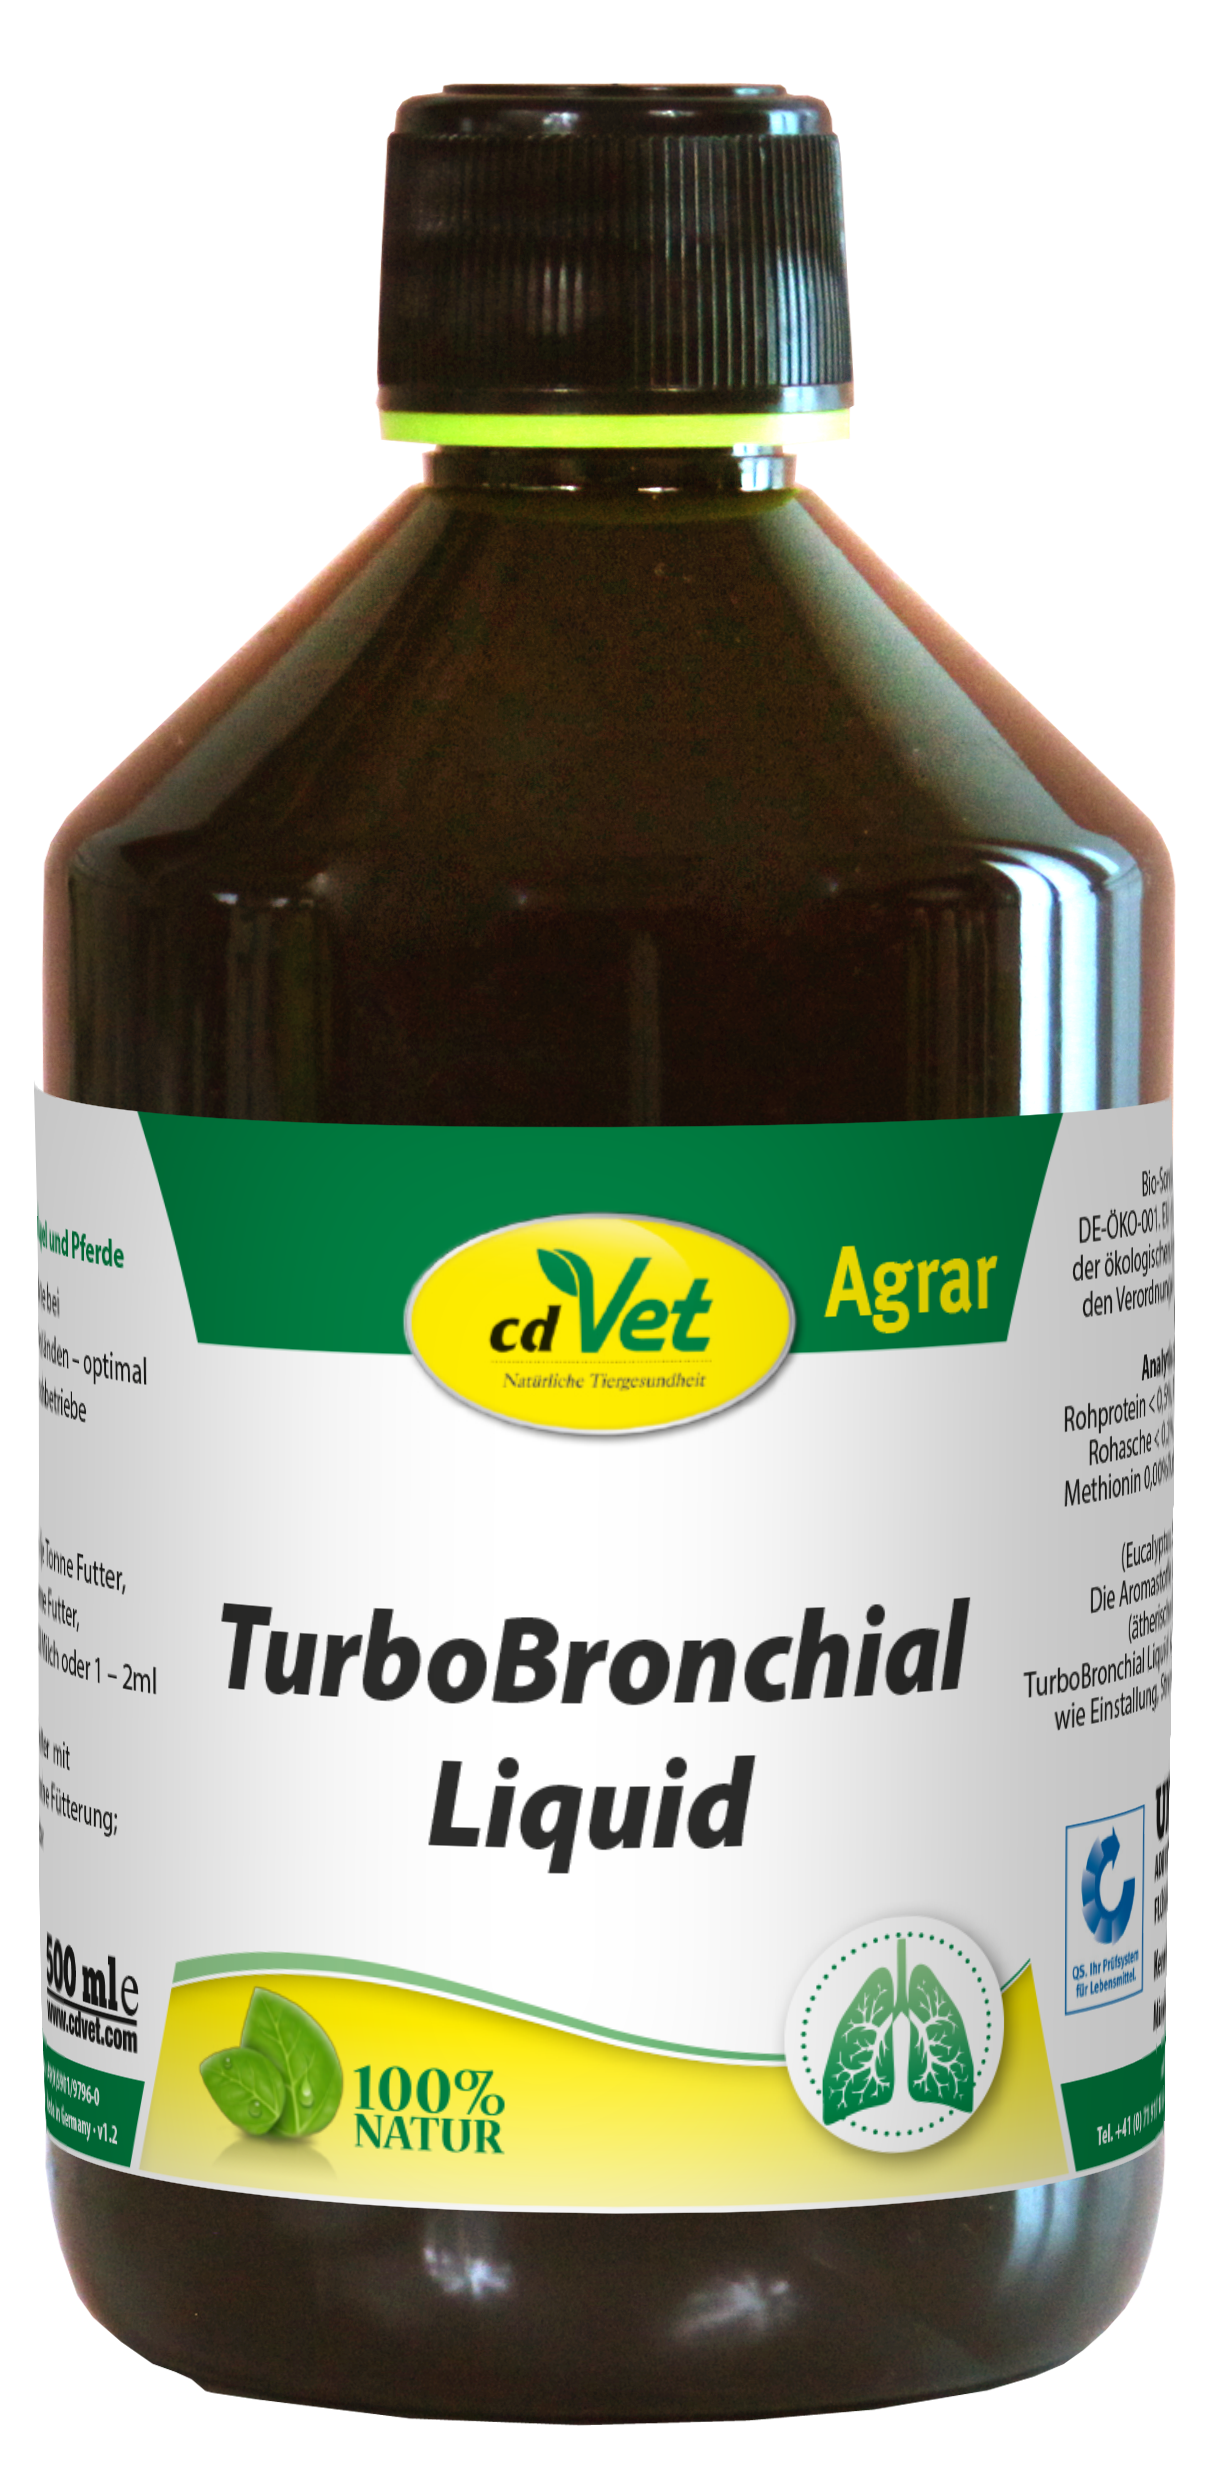 TurboBronchial Liquid 500 ml